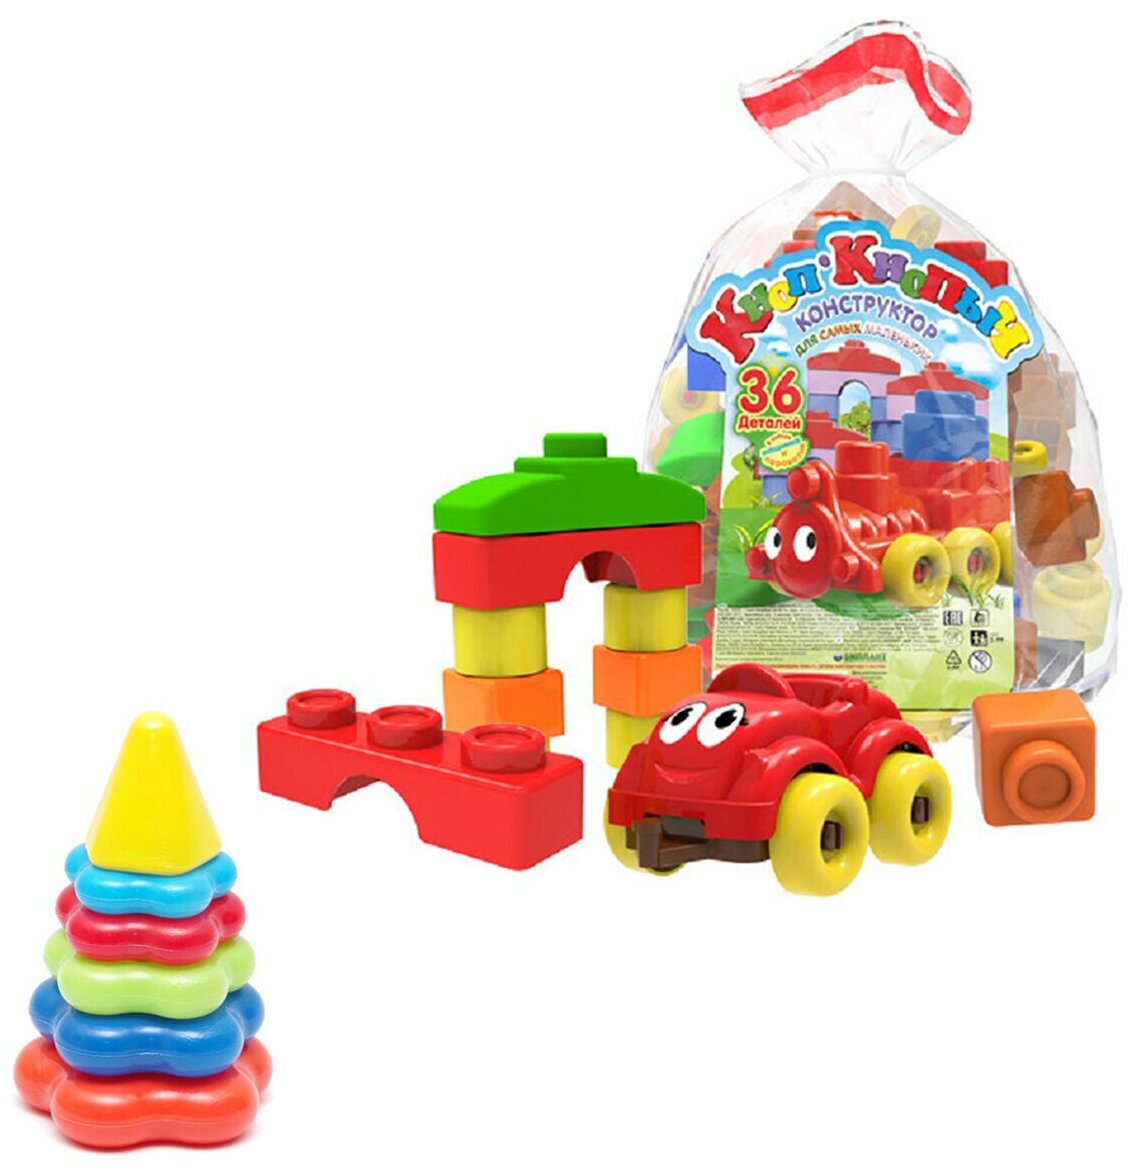 Развивающие игрушки для малышей/ Пирамида детская малая + Конструктор "Кноп-Кнопыч" 36 дет.